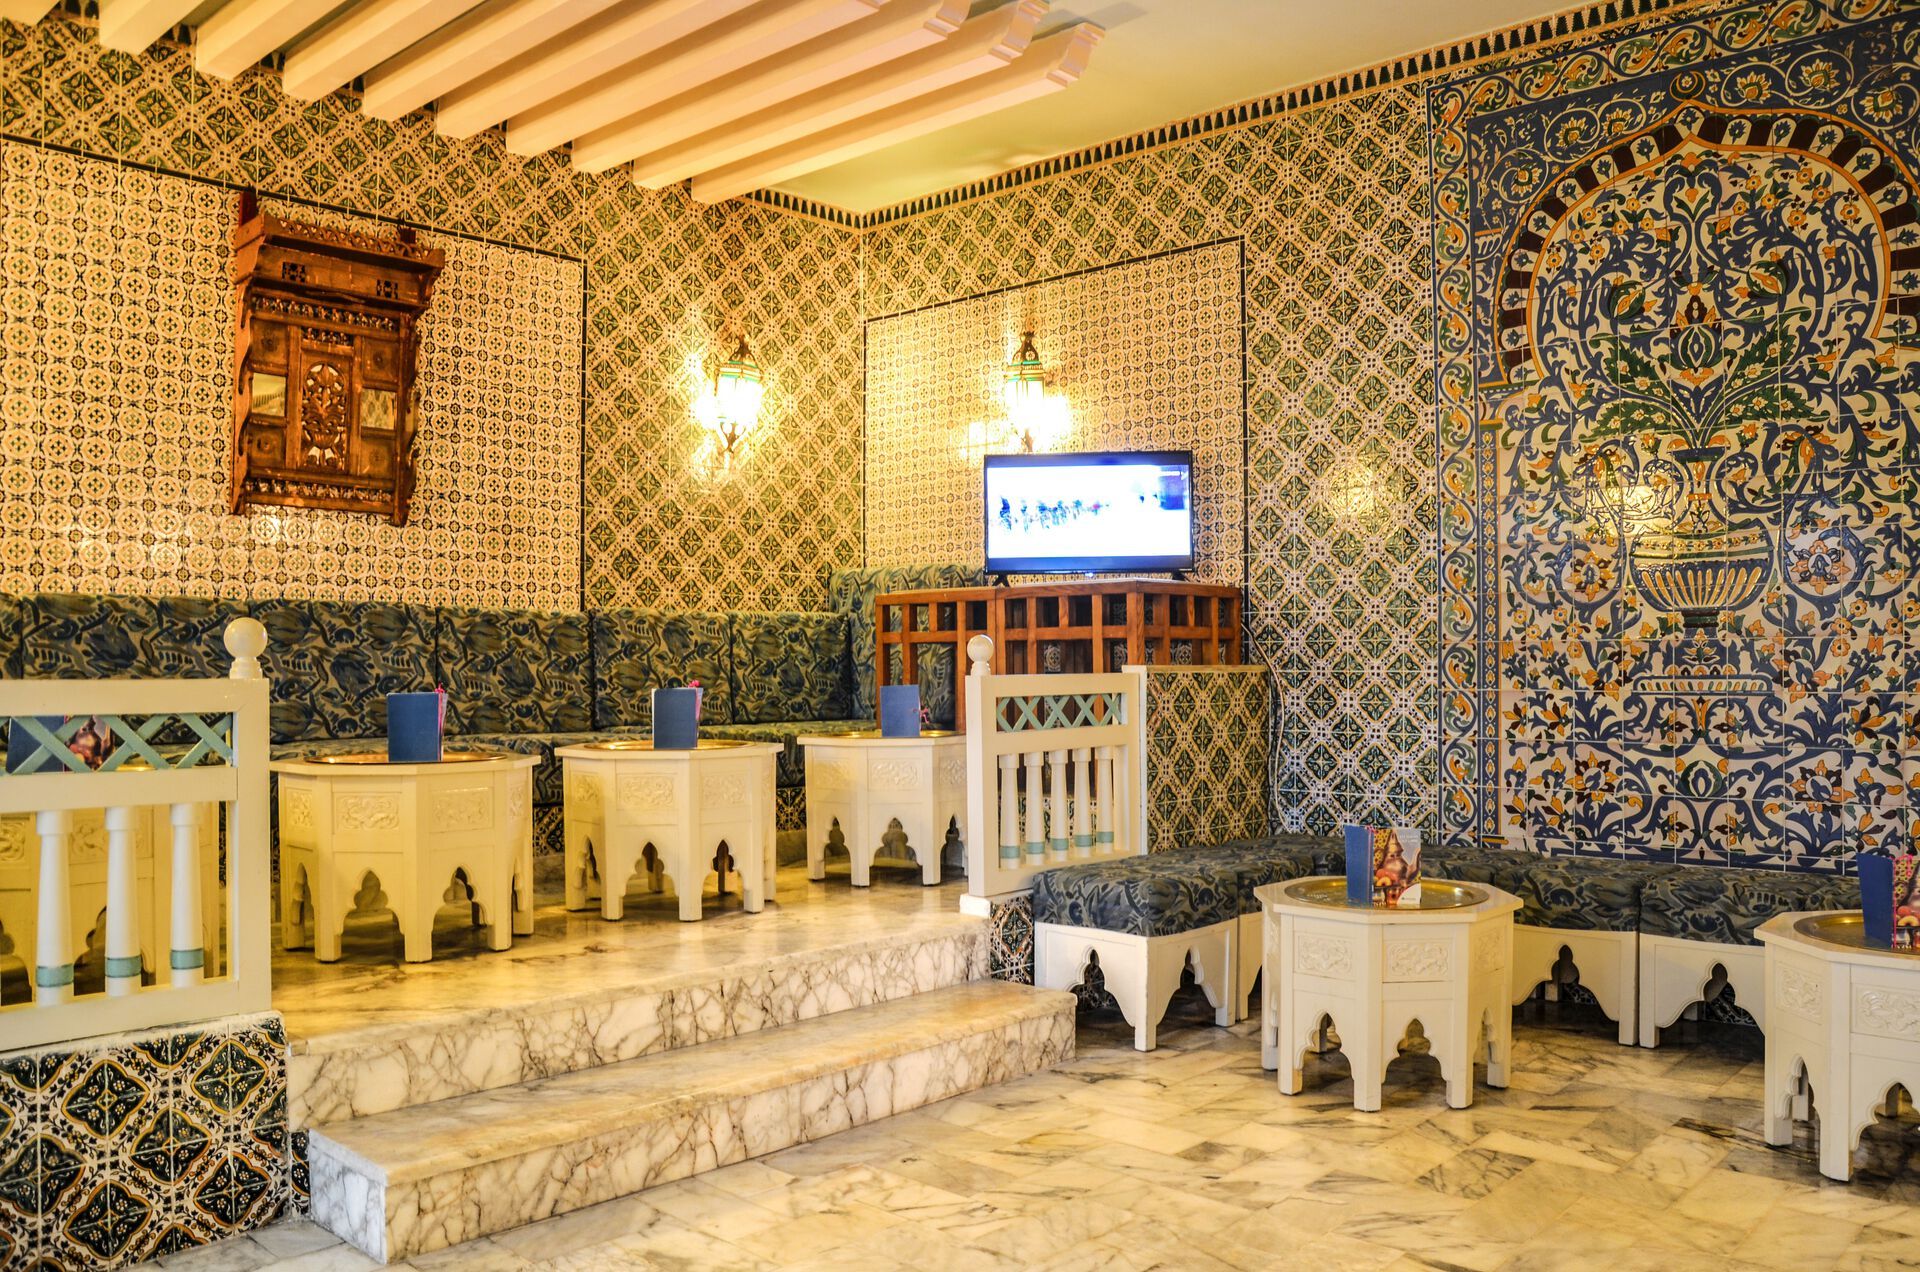 Tunisie - Hammamet - Hôtel Aziza Thalasso Golf - Adult only 4*